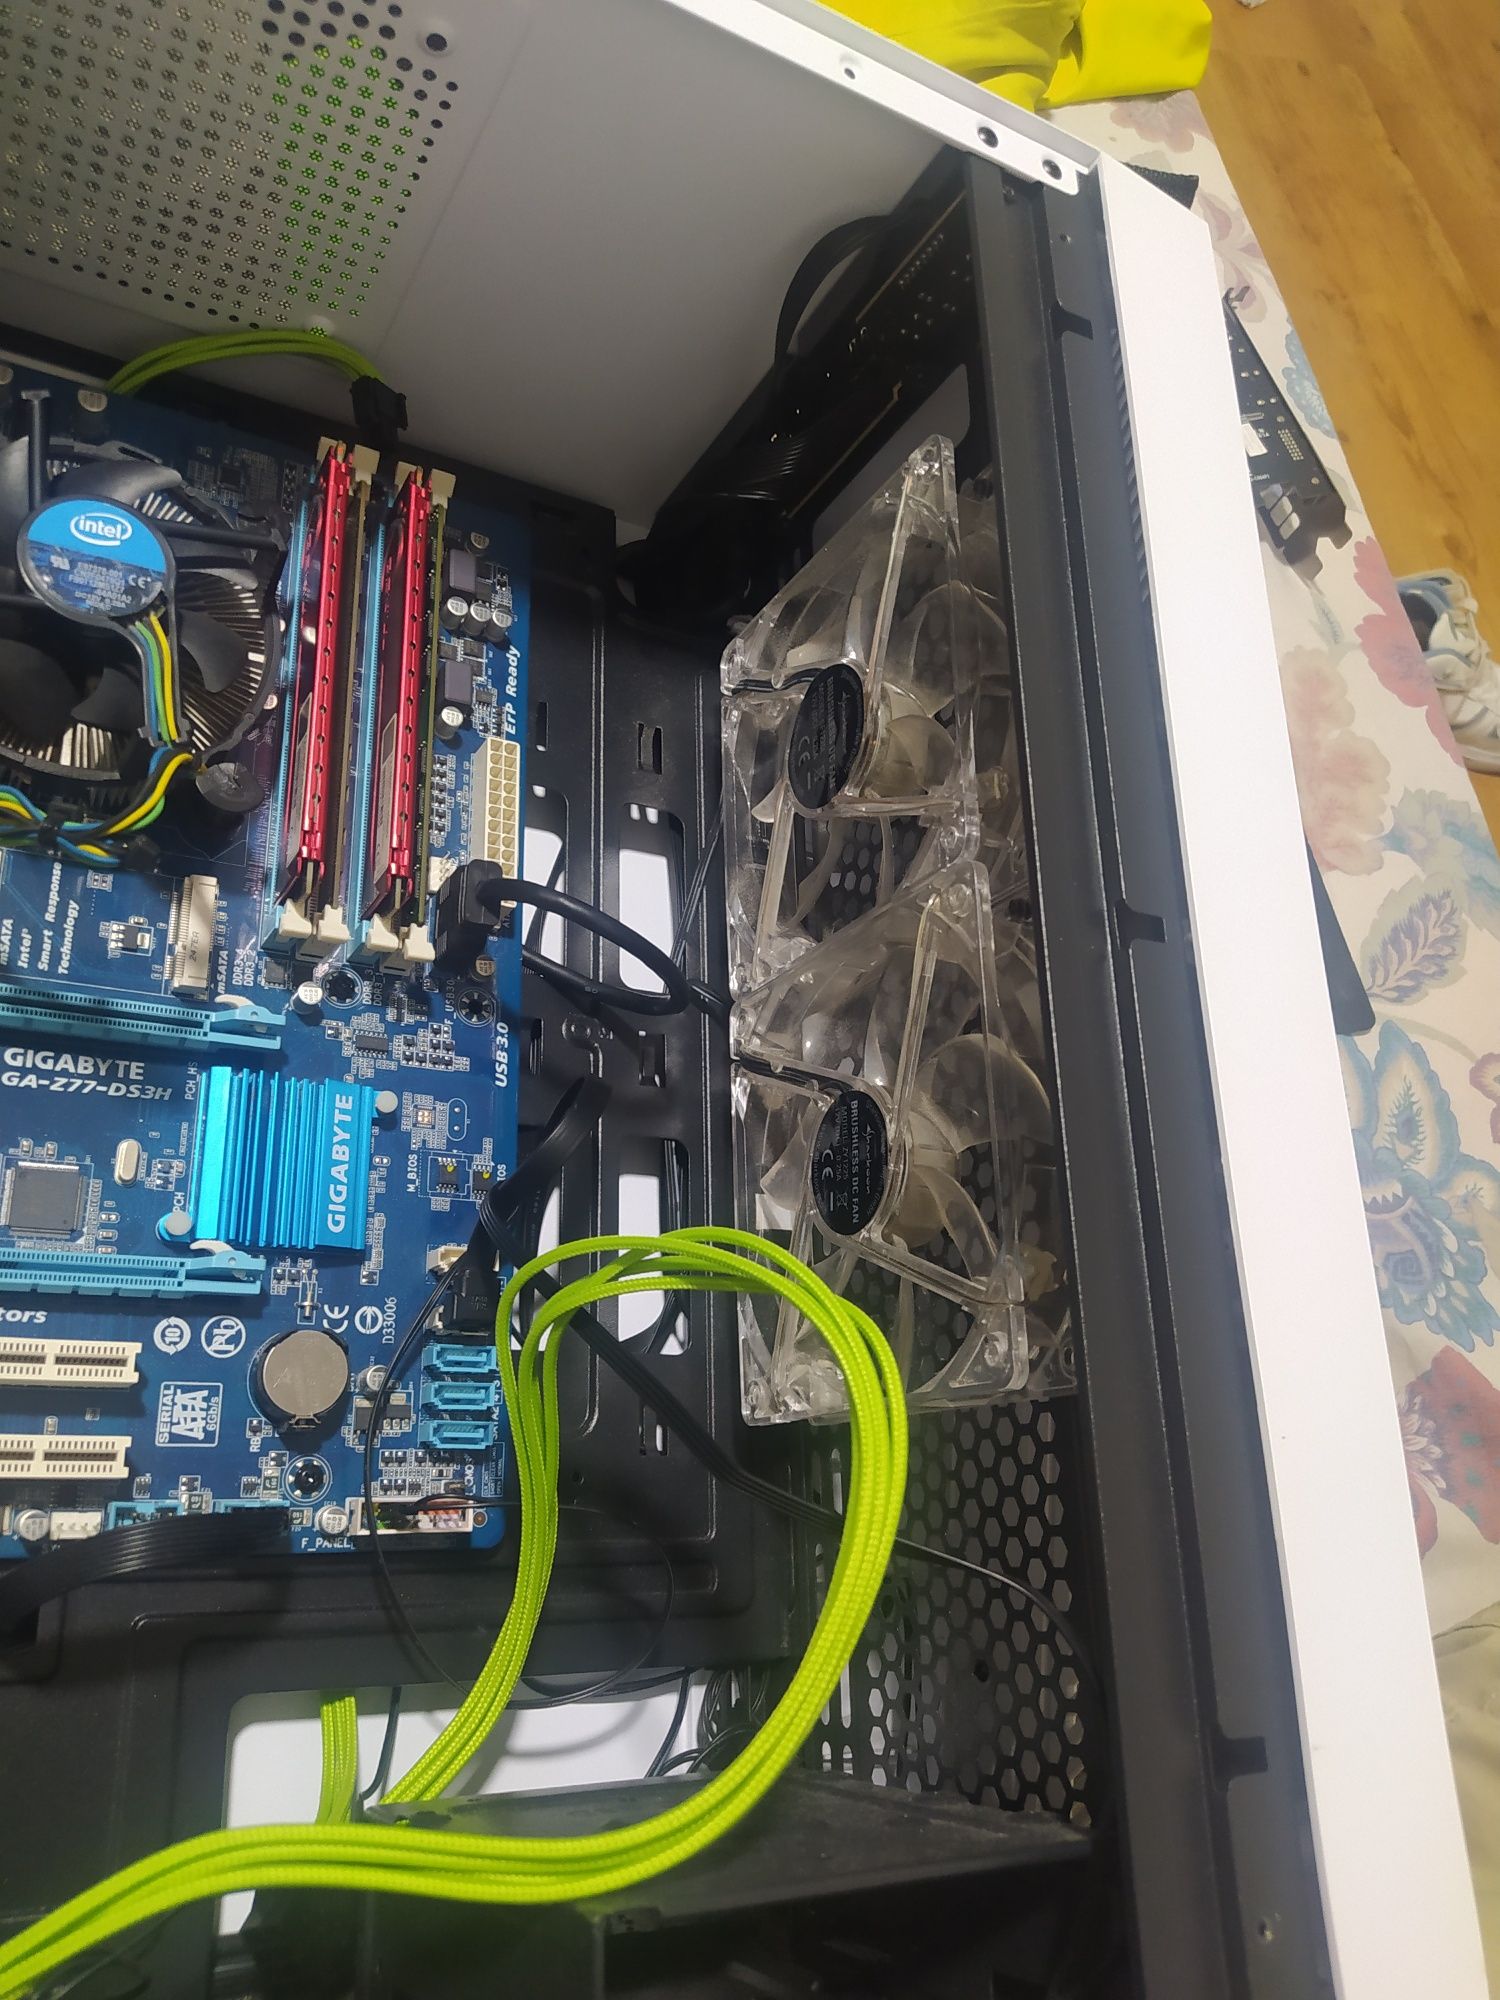 Caixa unyka de PC com alguns componentes